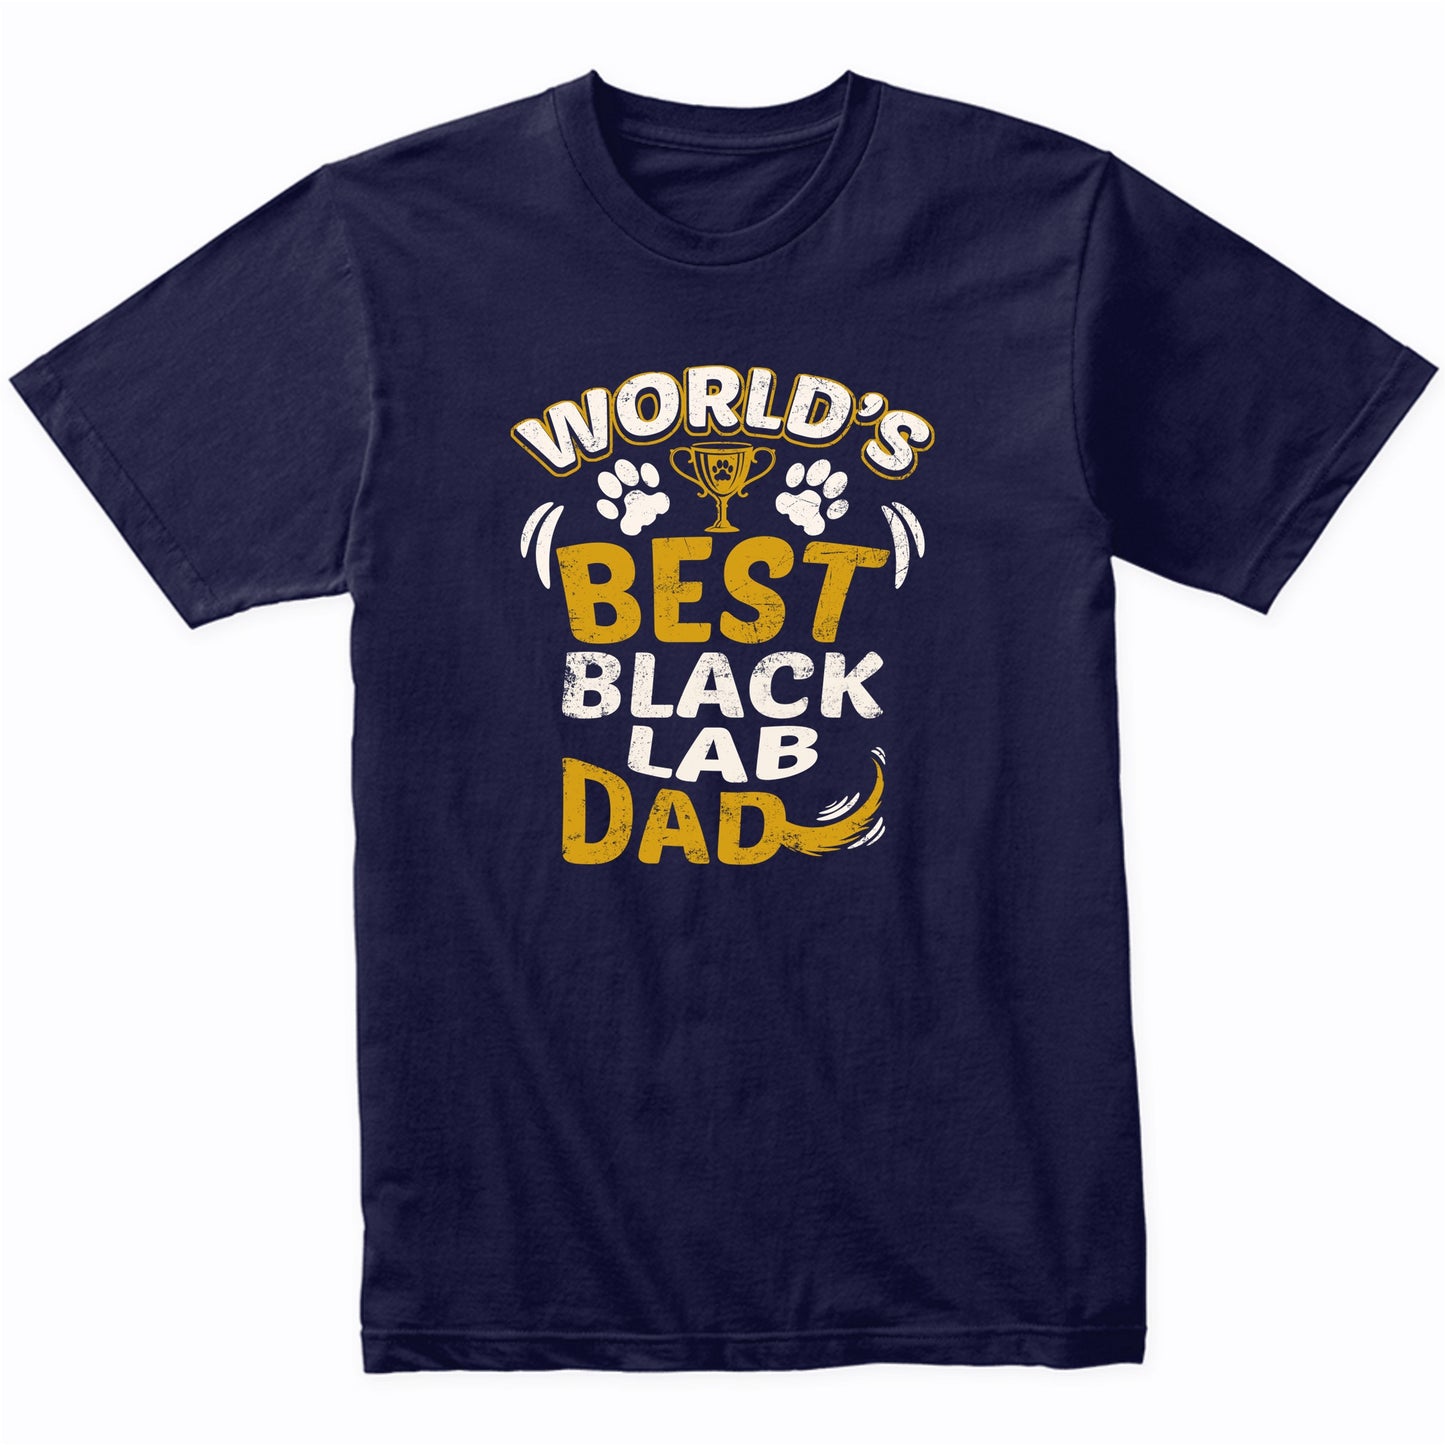 World's Best Black Lab Dad Graphic T-Shirt